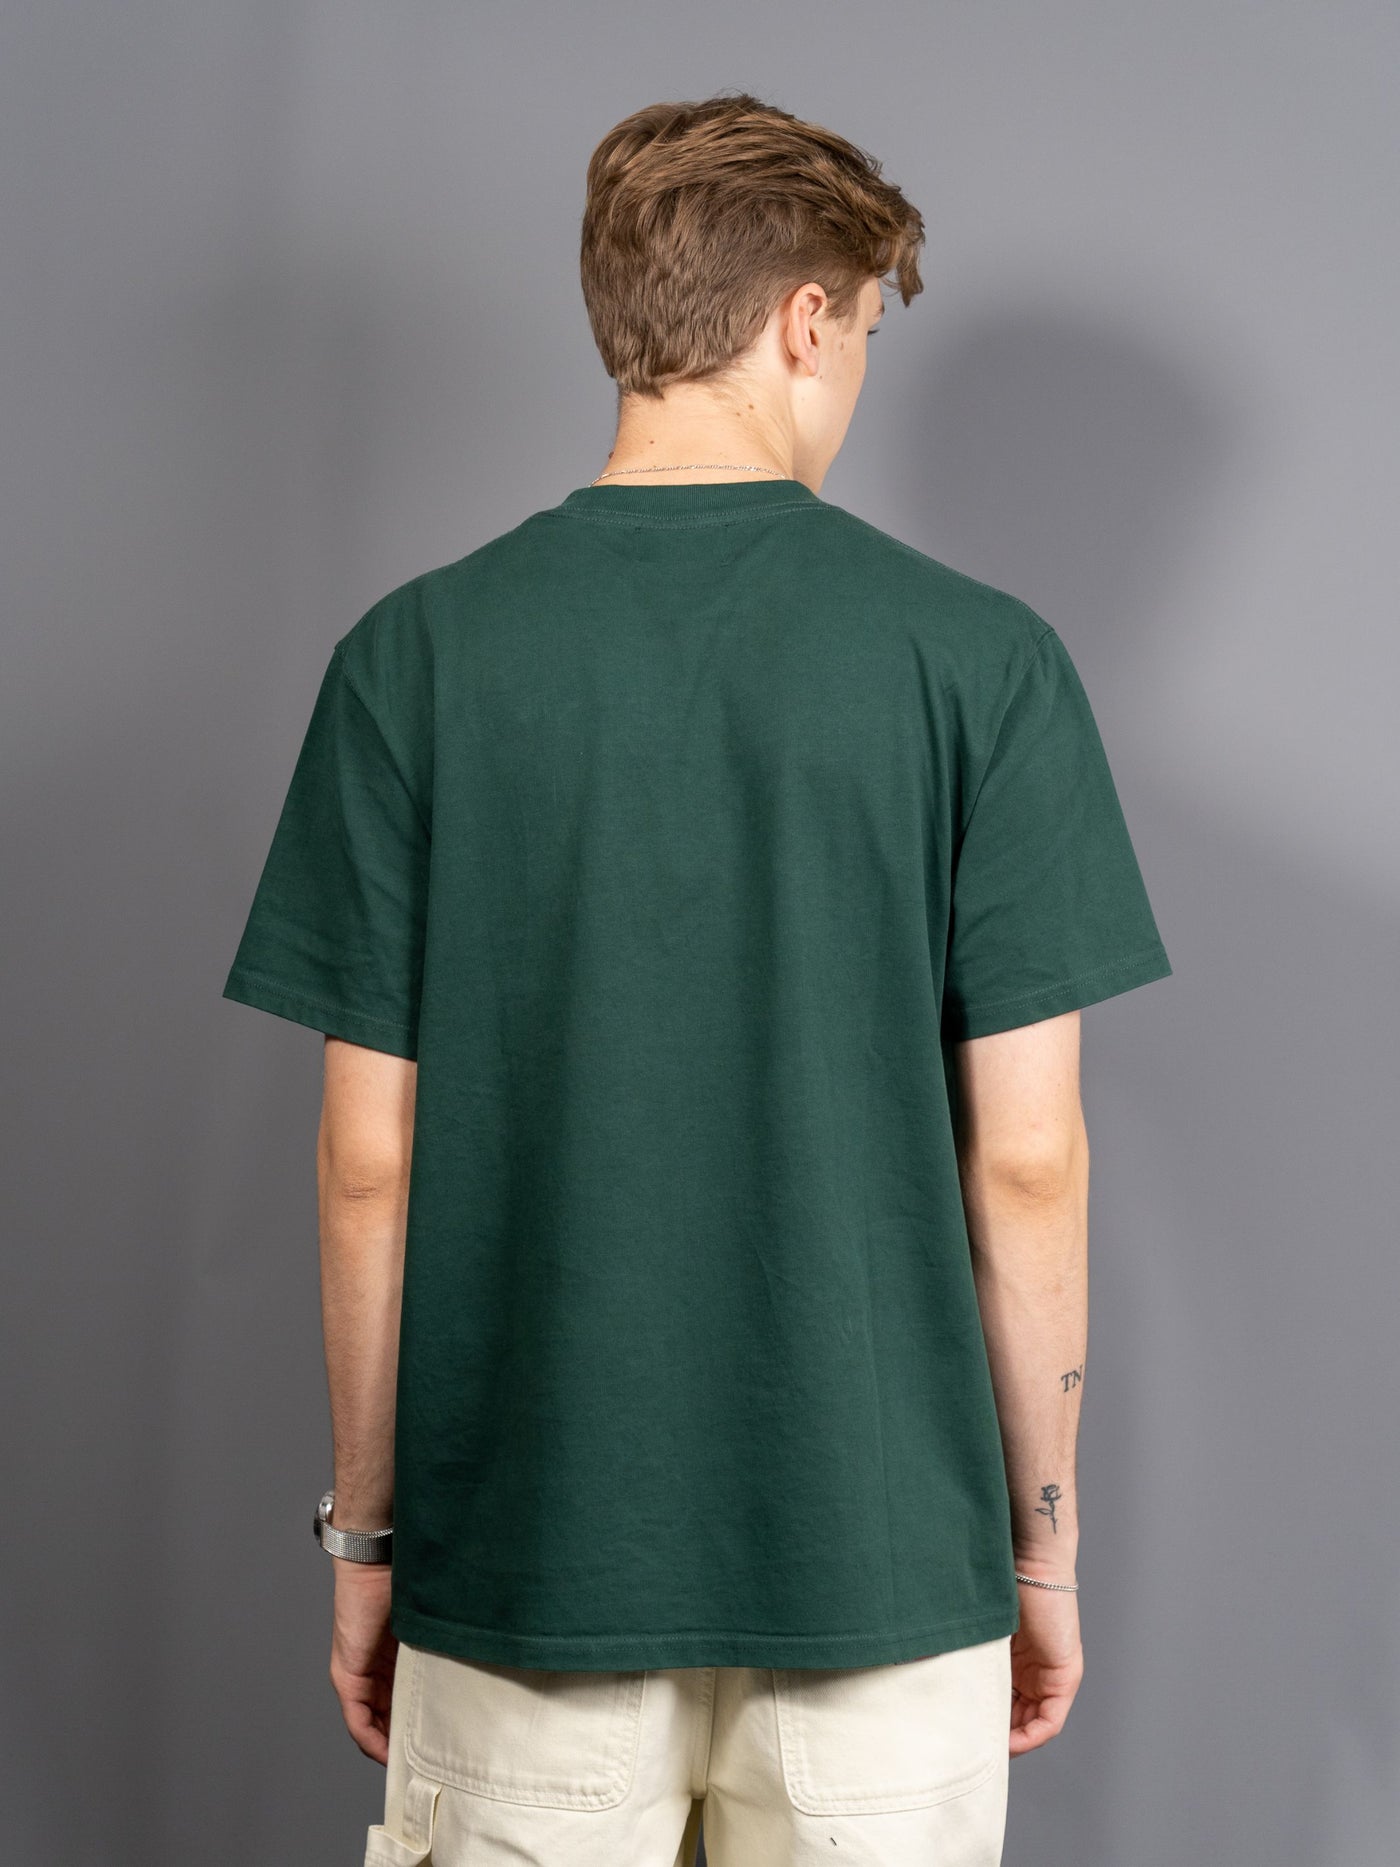 Allan T-Shirt - Grøn